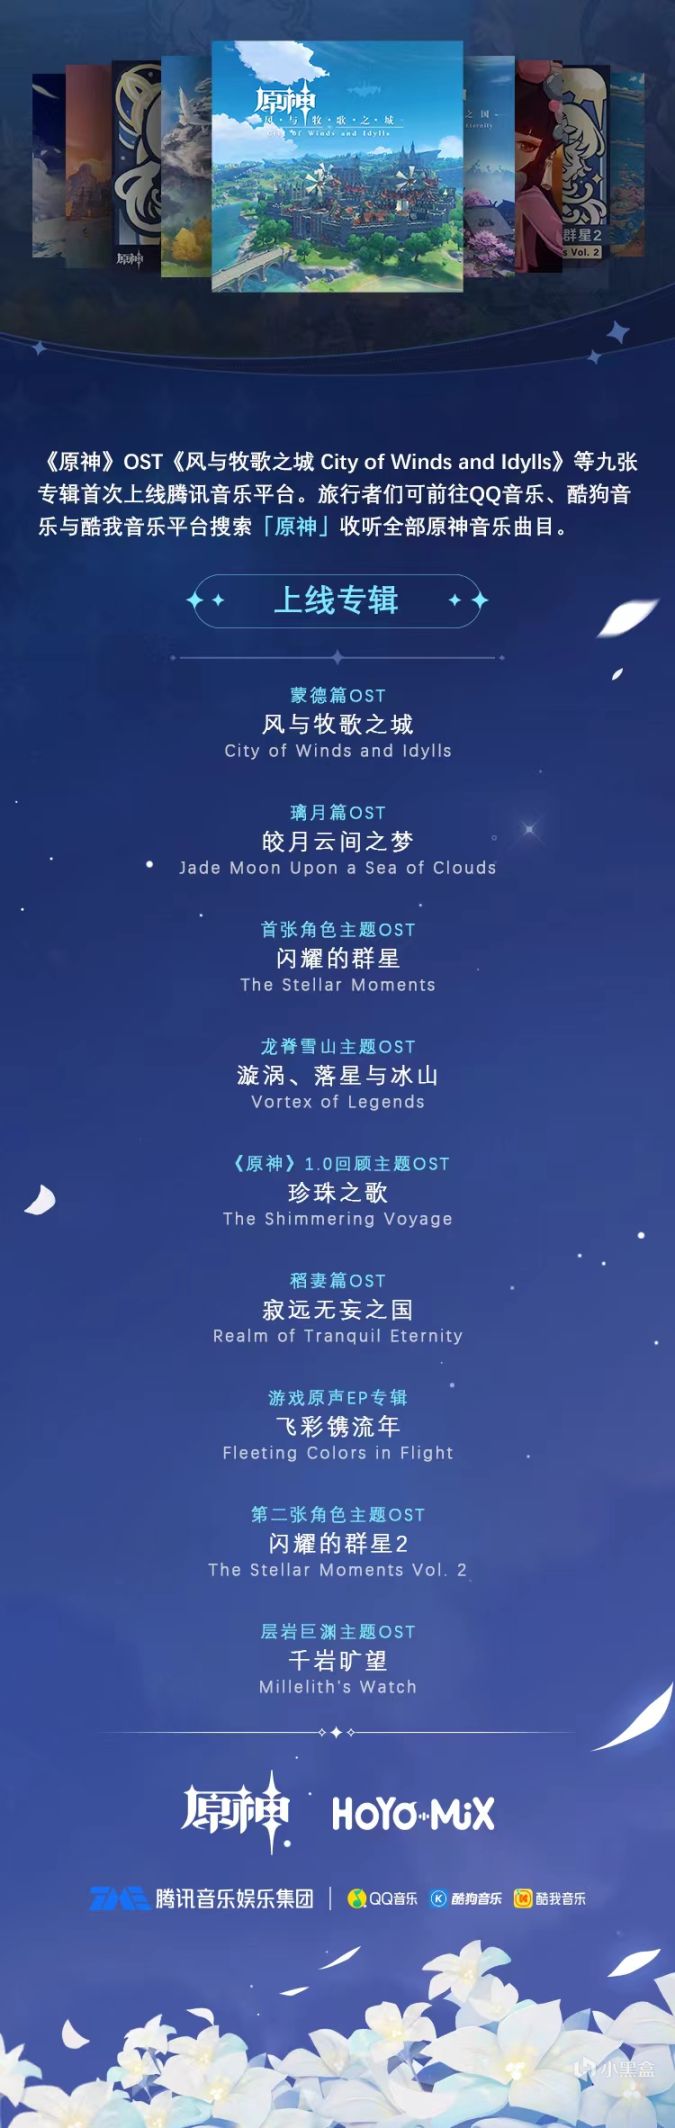 《原神》9张OST现已上线腾讯音乐平台-第0张